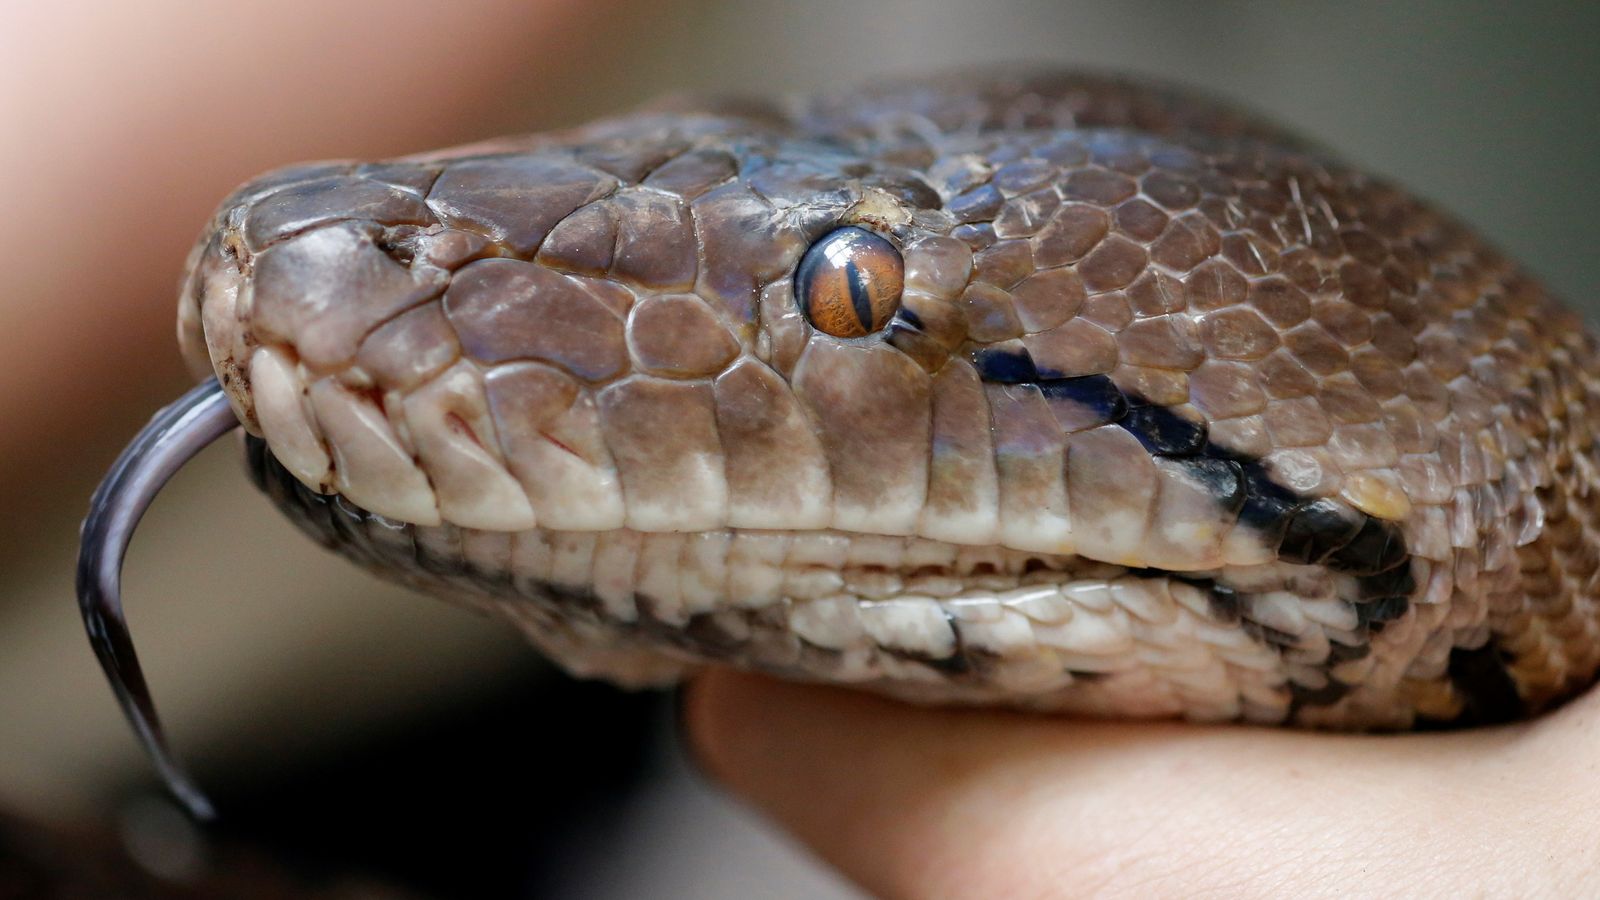 Mayat Indonesia ditemukan di dalam ular, menurut laporan